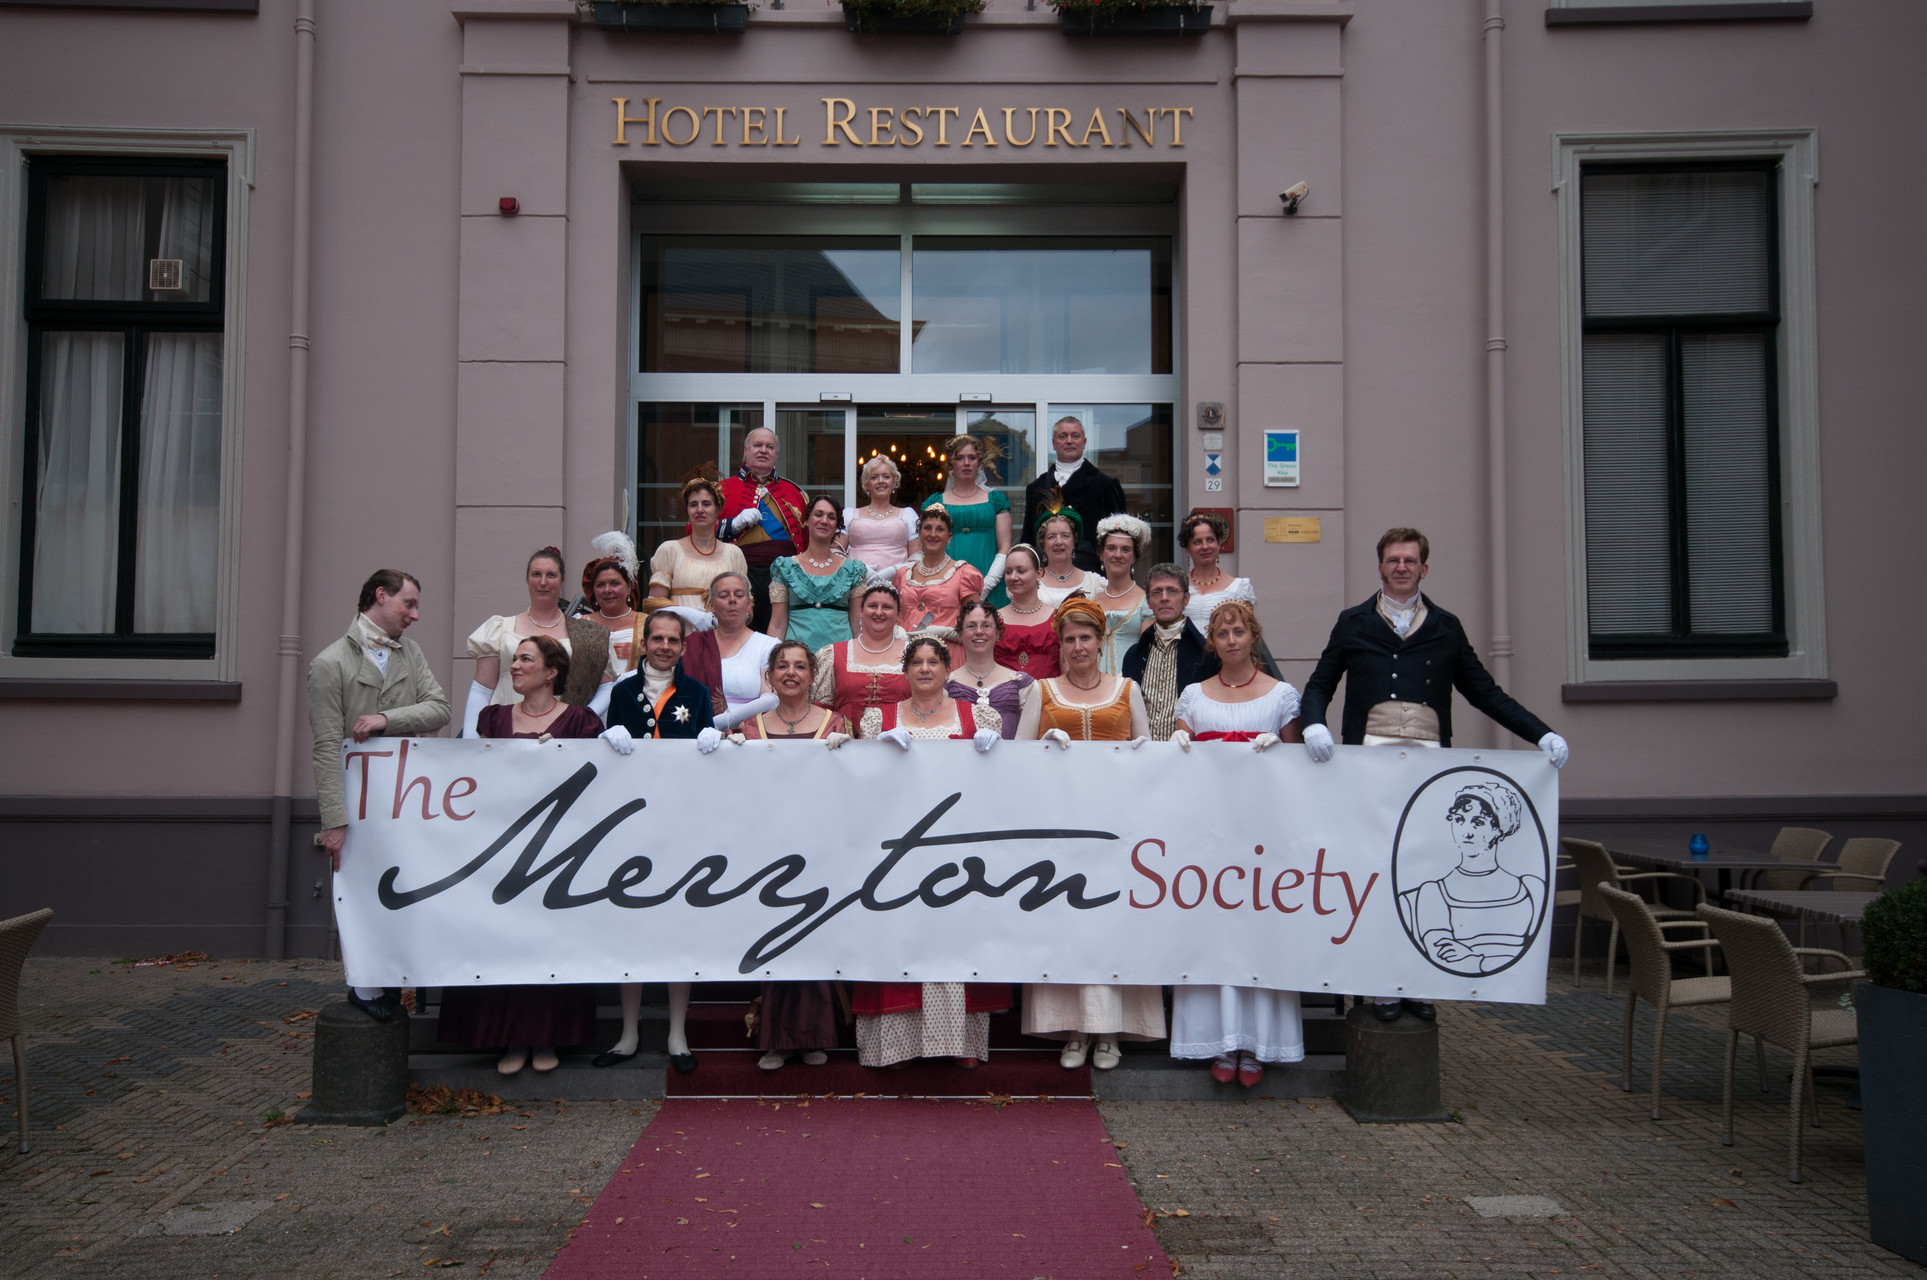 The Meryton Society